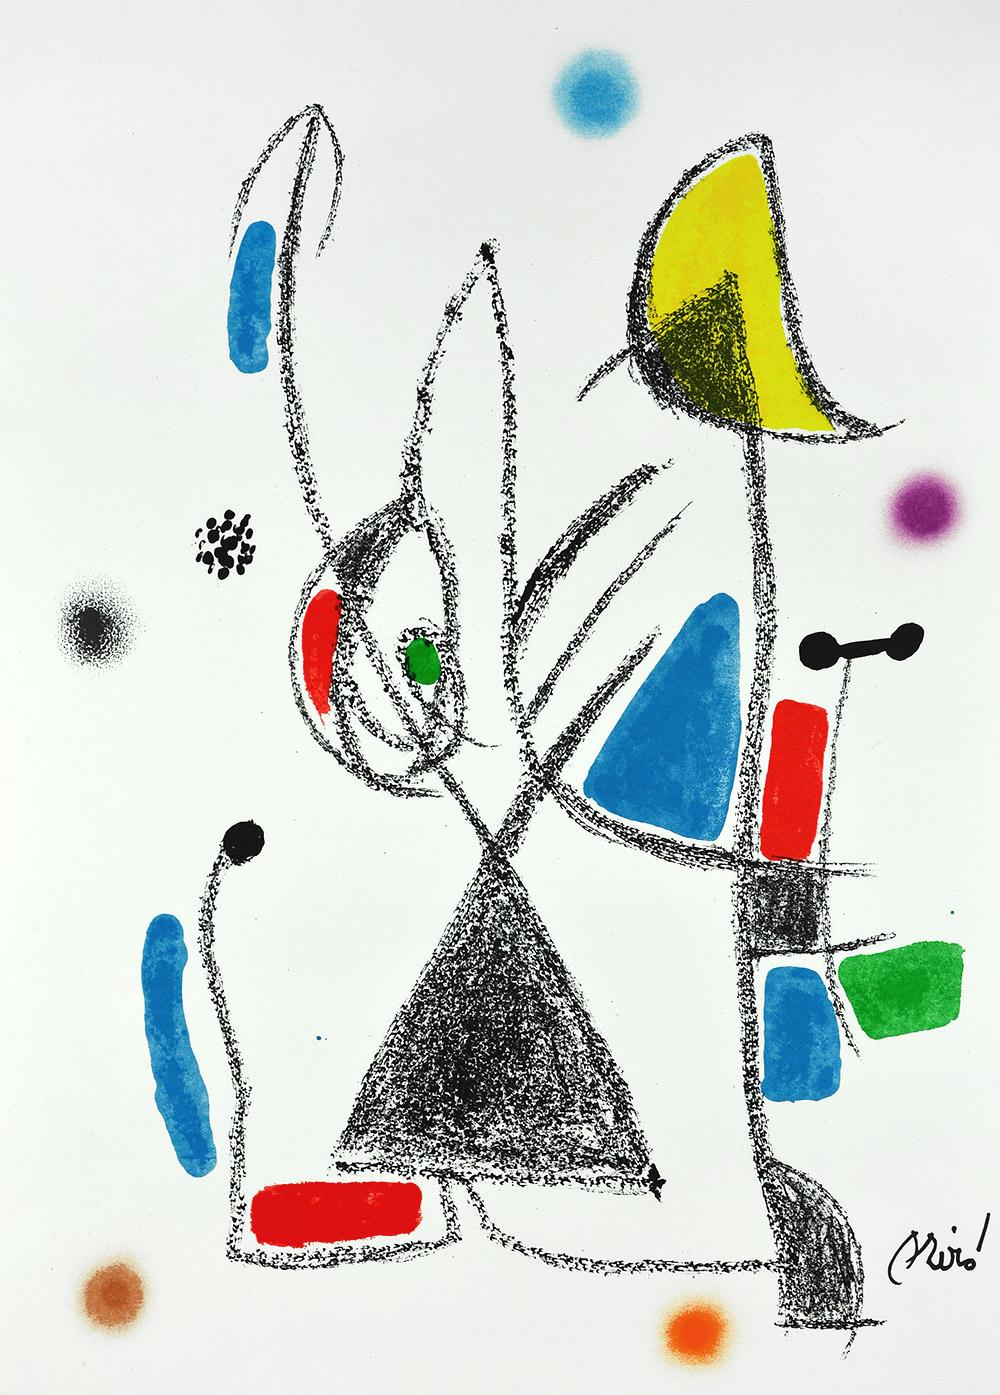 Joan Miró - Maravillas con variaciones acrósticas en el jardín de Miró XVI
Datum der Gründung: 1975
Medium: Lithographie auf Gvarro-Papier
Auflage: 1500
Größe: 49,5 x 35,5 cm
Zustand: In sehr gutem Zustand und nie gerahmt
Beobachtungen: Lithographie